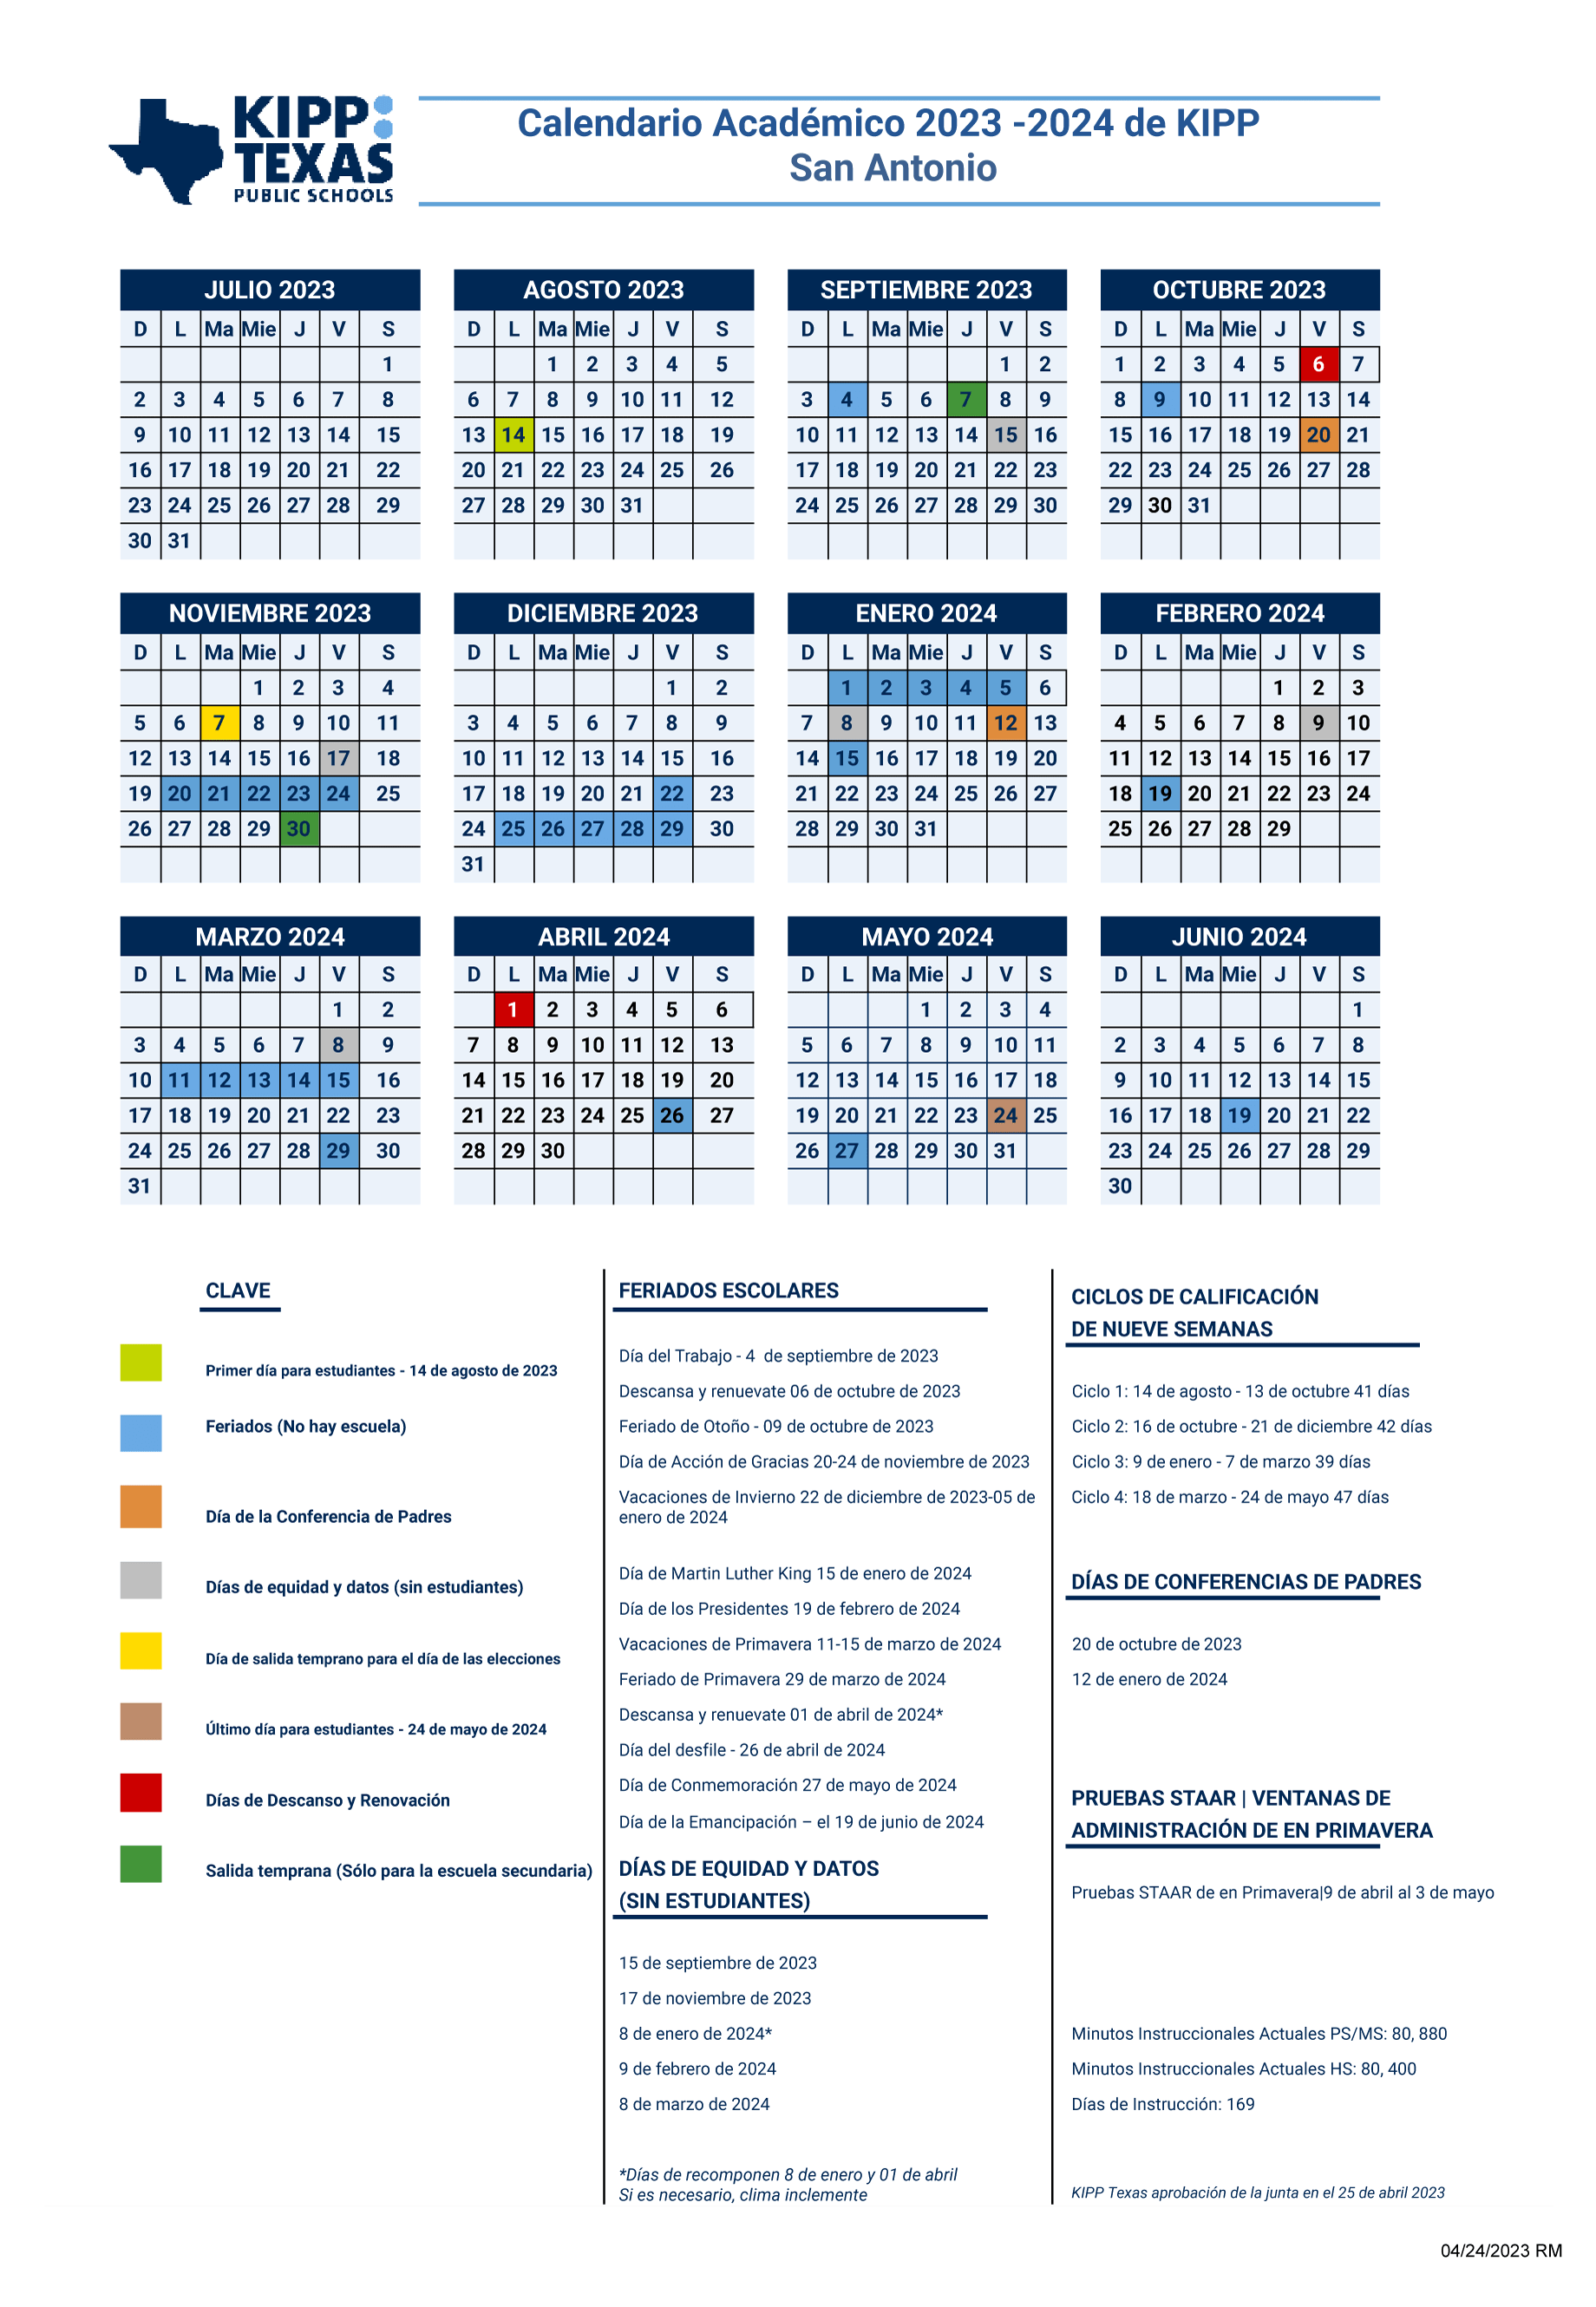 Calendarios Académico 2023-2024